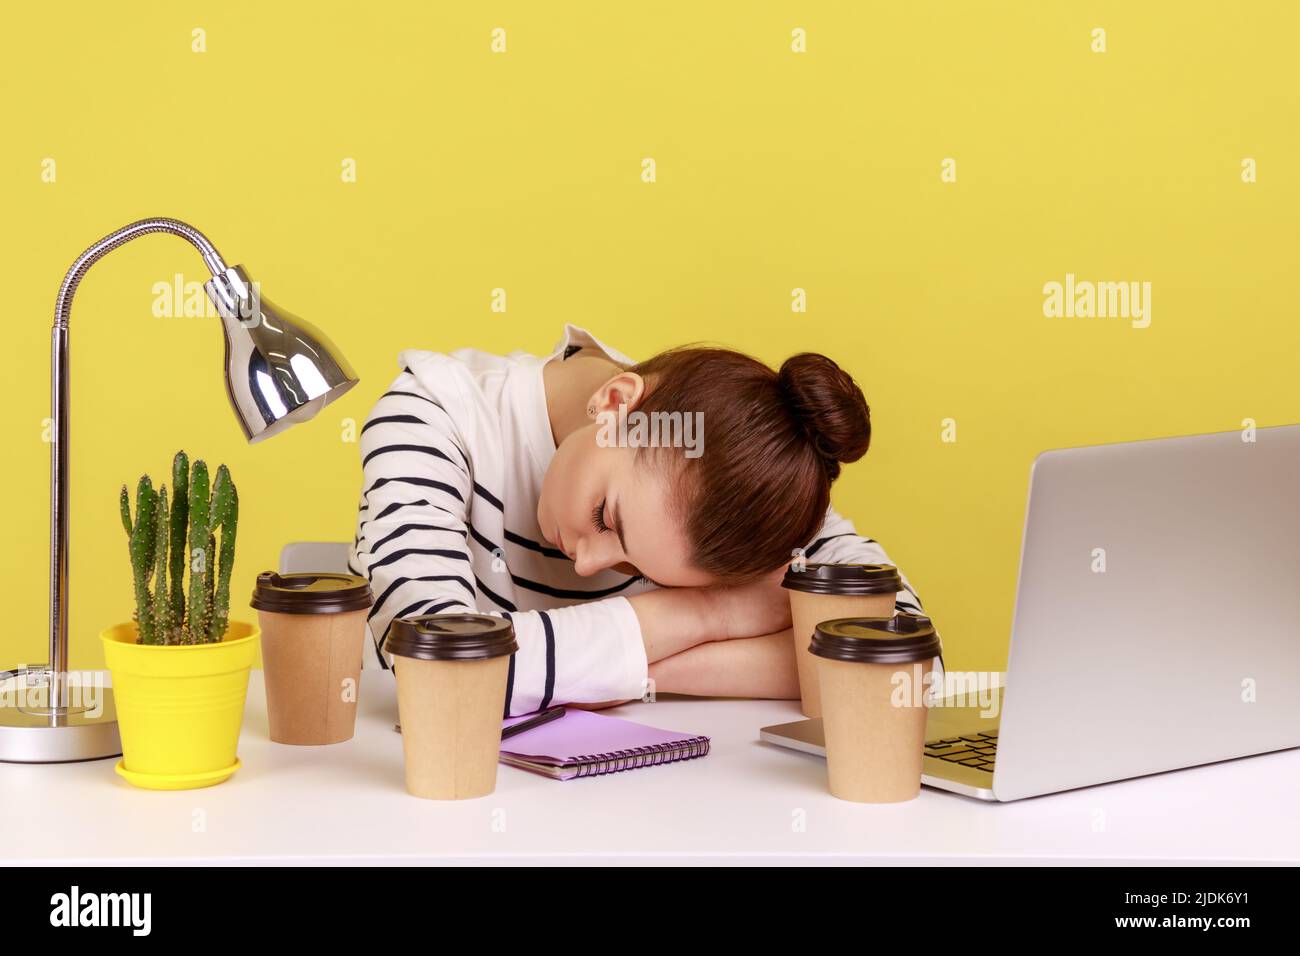 Una donna affaticata che dorme sul posto di lavoro, distesa circondata da tazze di caffè, riposa dopo il lavoro straordinario. Studio interno girato isolato su sfondo giallo. Foto Stock